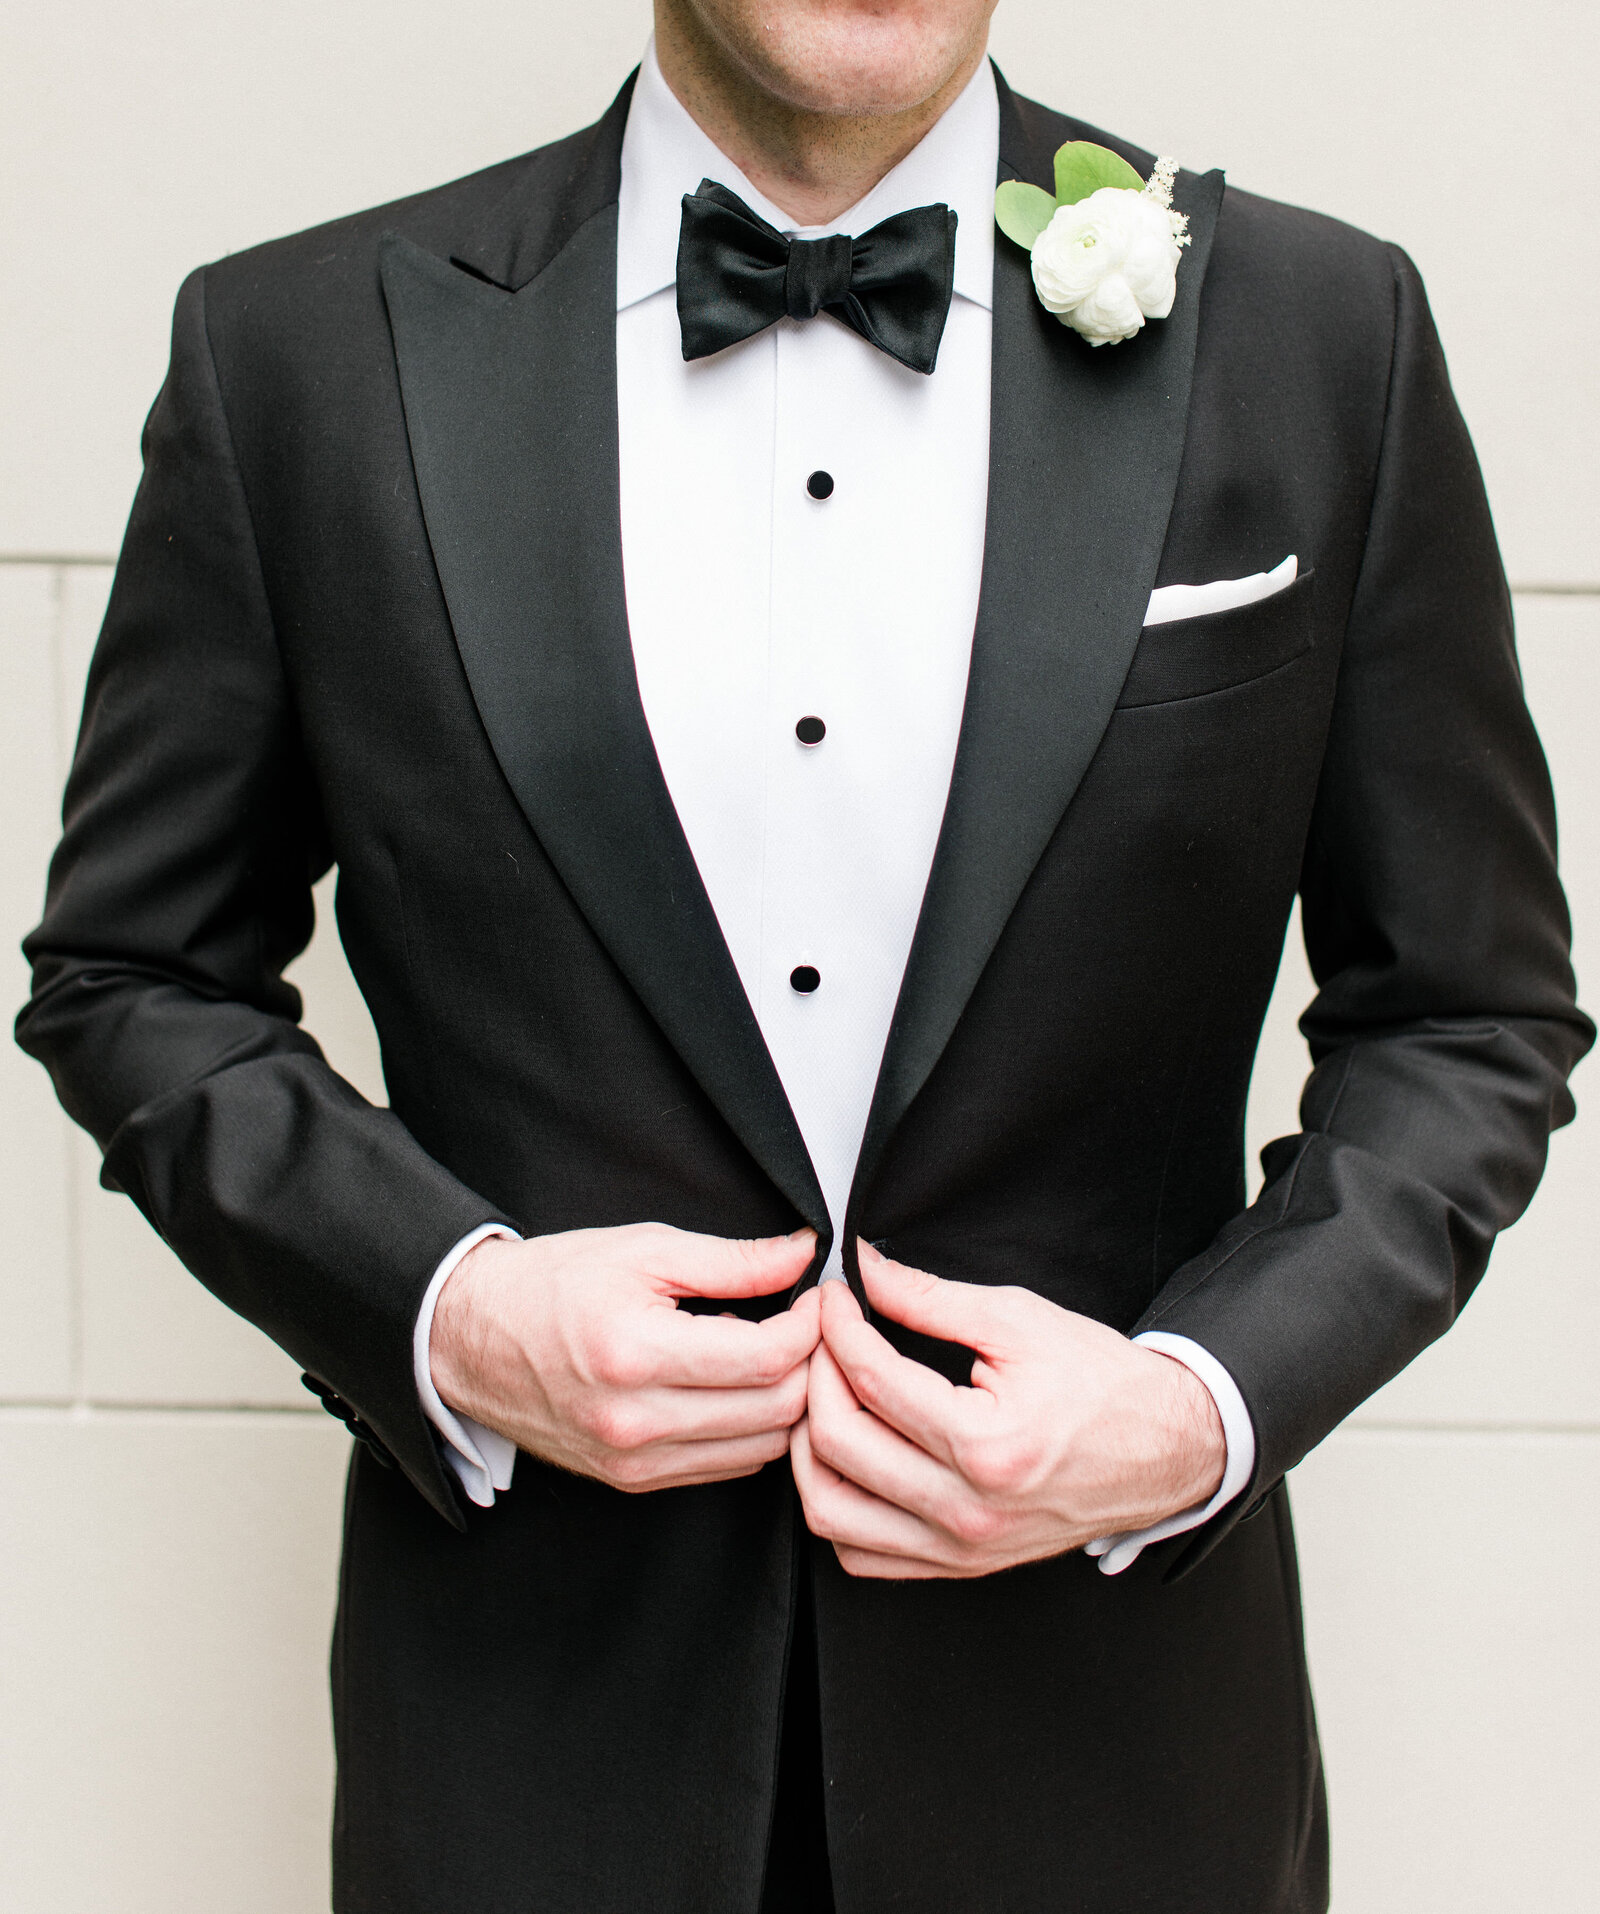 Groom in a tuxedo